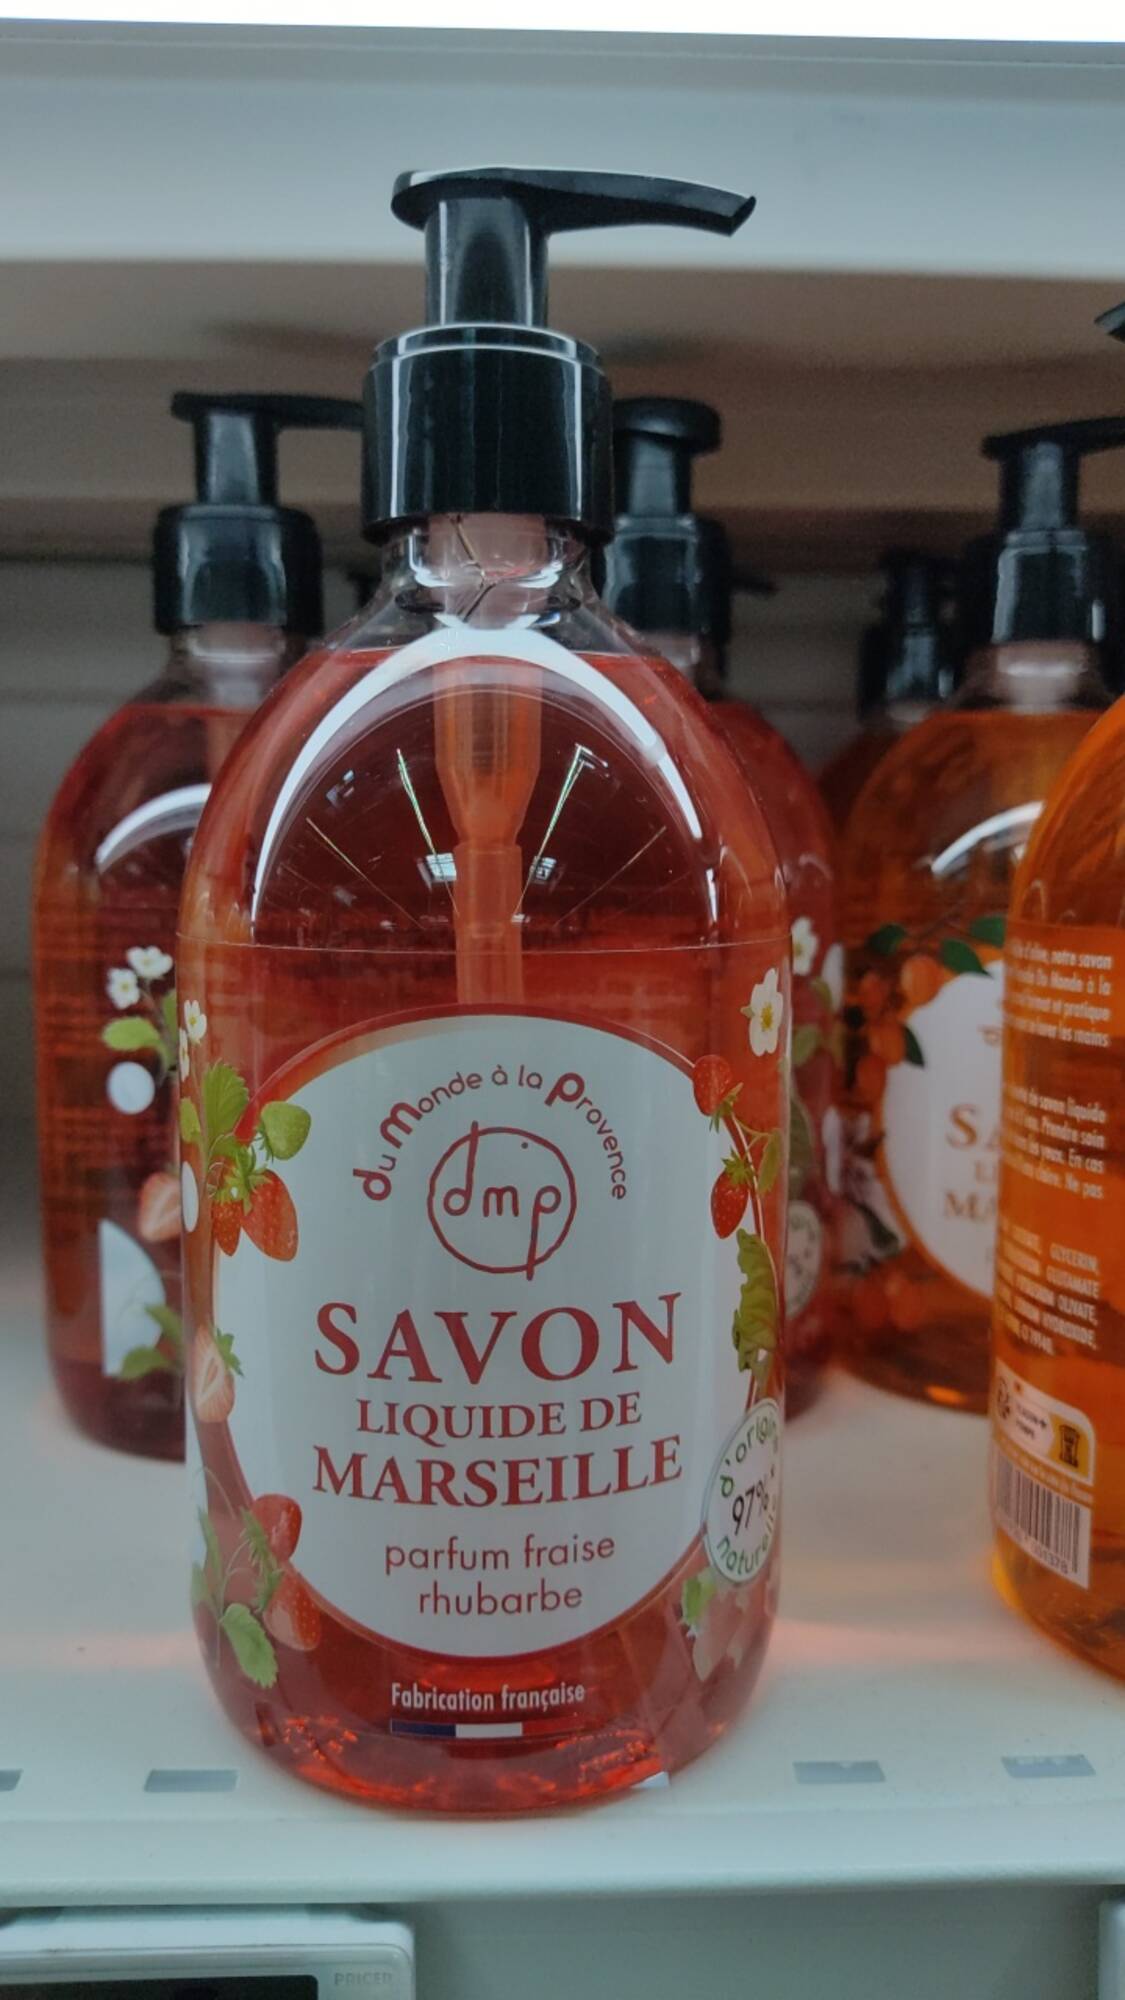 DU MONDE À LA PROVENCE - Savon liquide de Marseille parfum fraise rhubarde